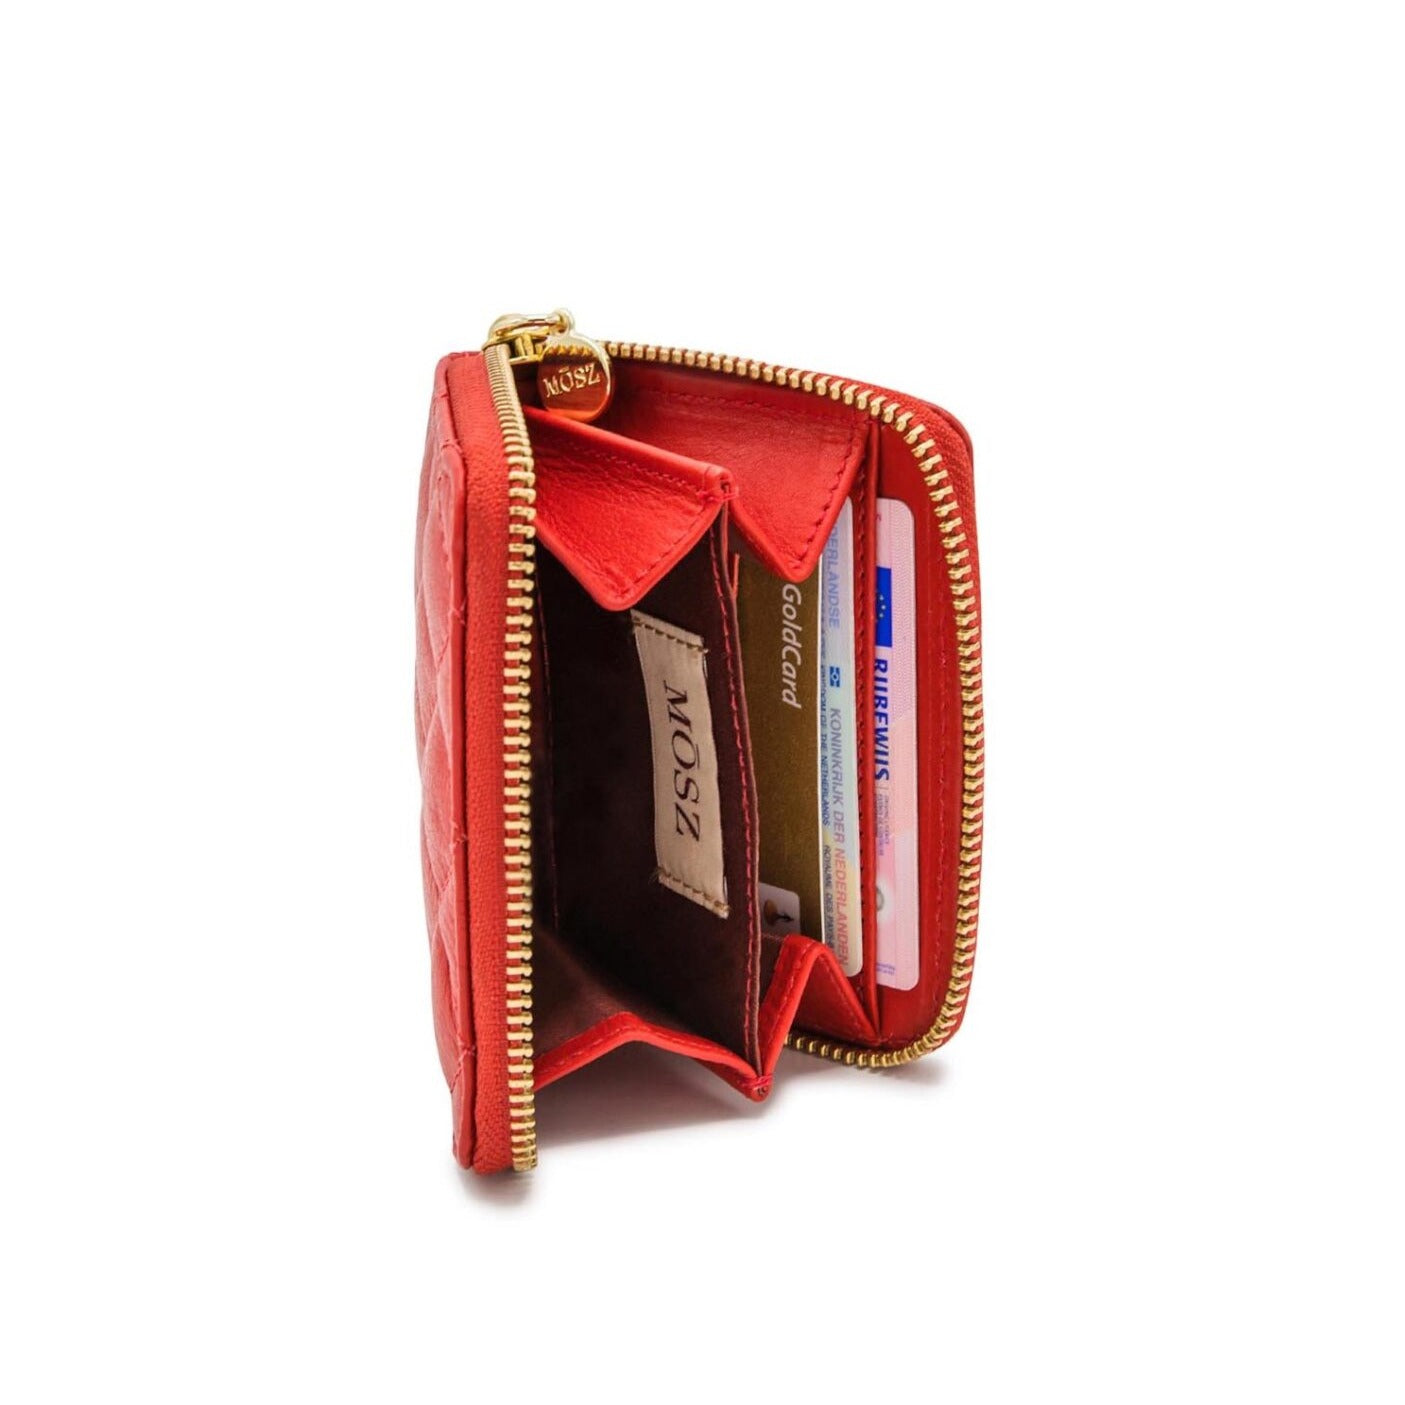 Damenbrieftasche aus Leder - rot gesteppt - MŌSZ Sophie